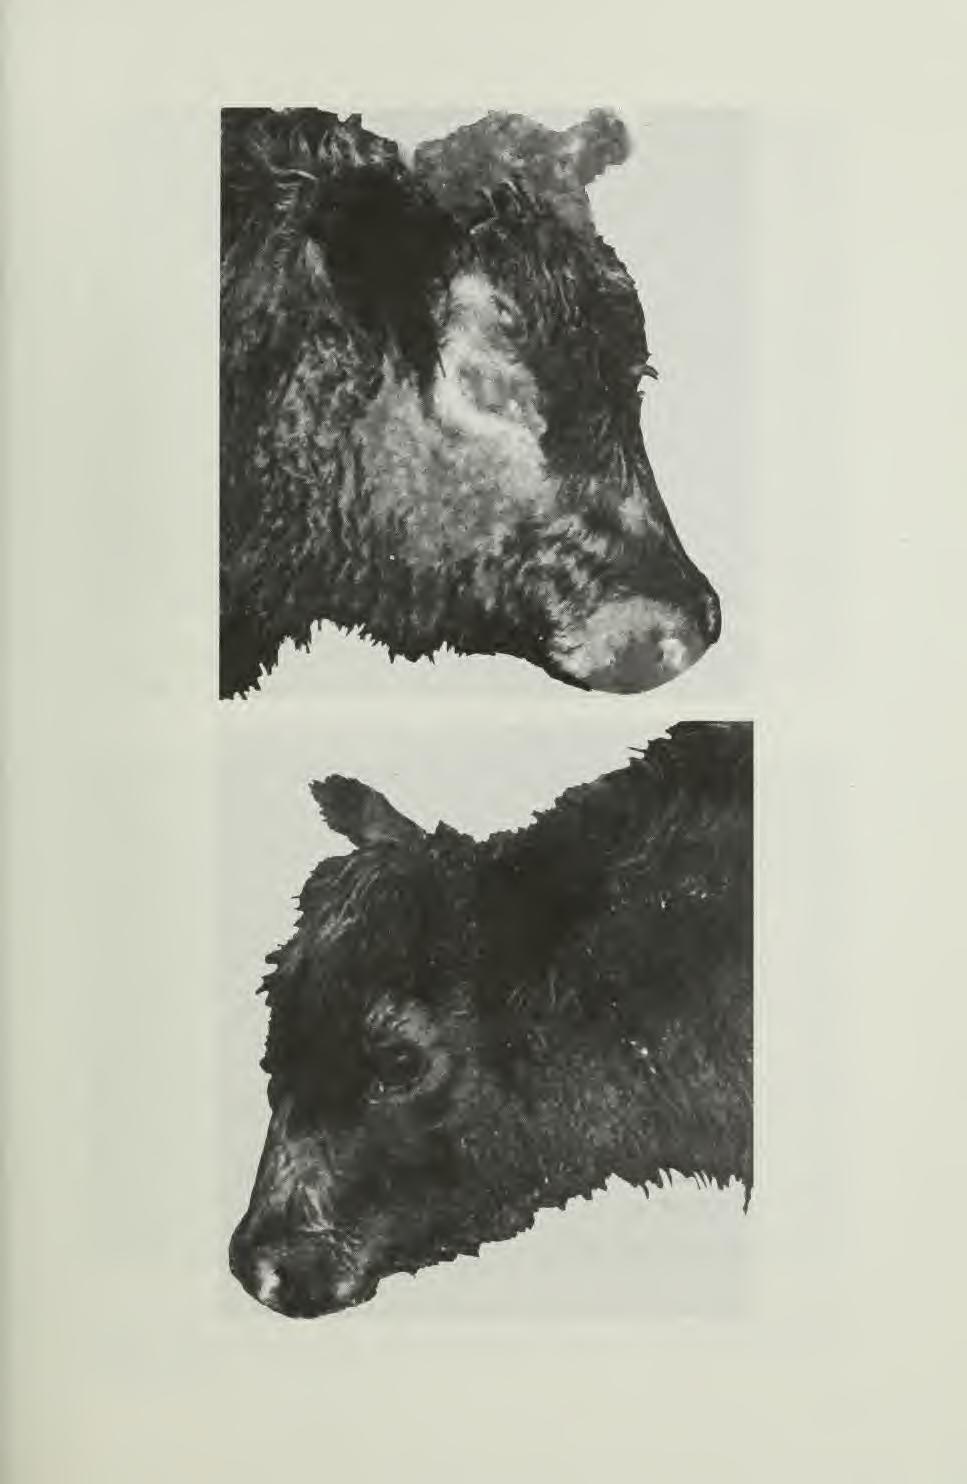 Fig. 1 calf